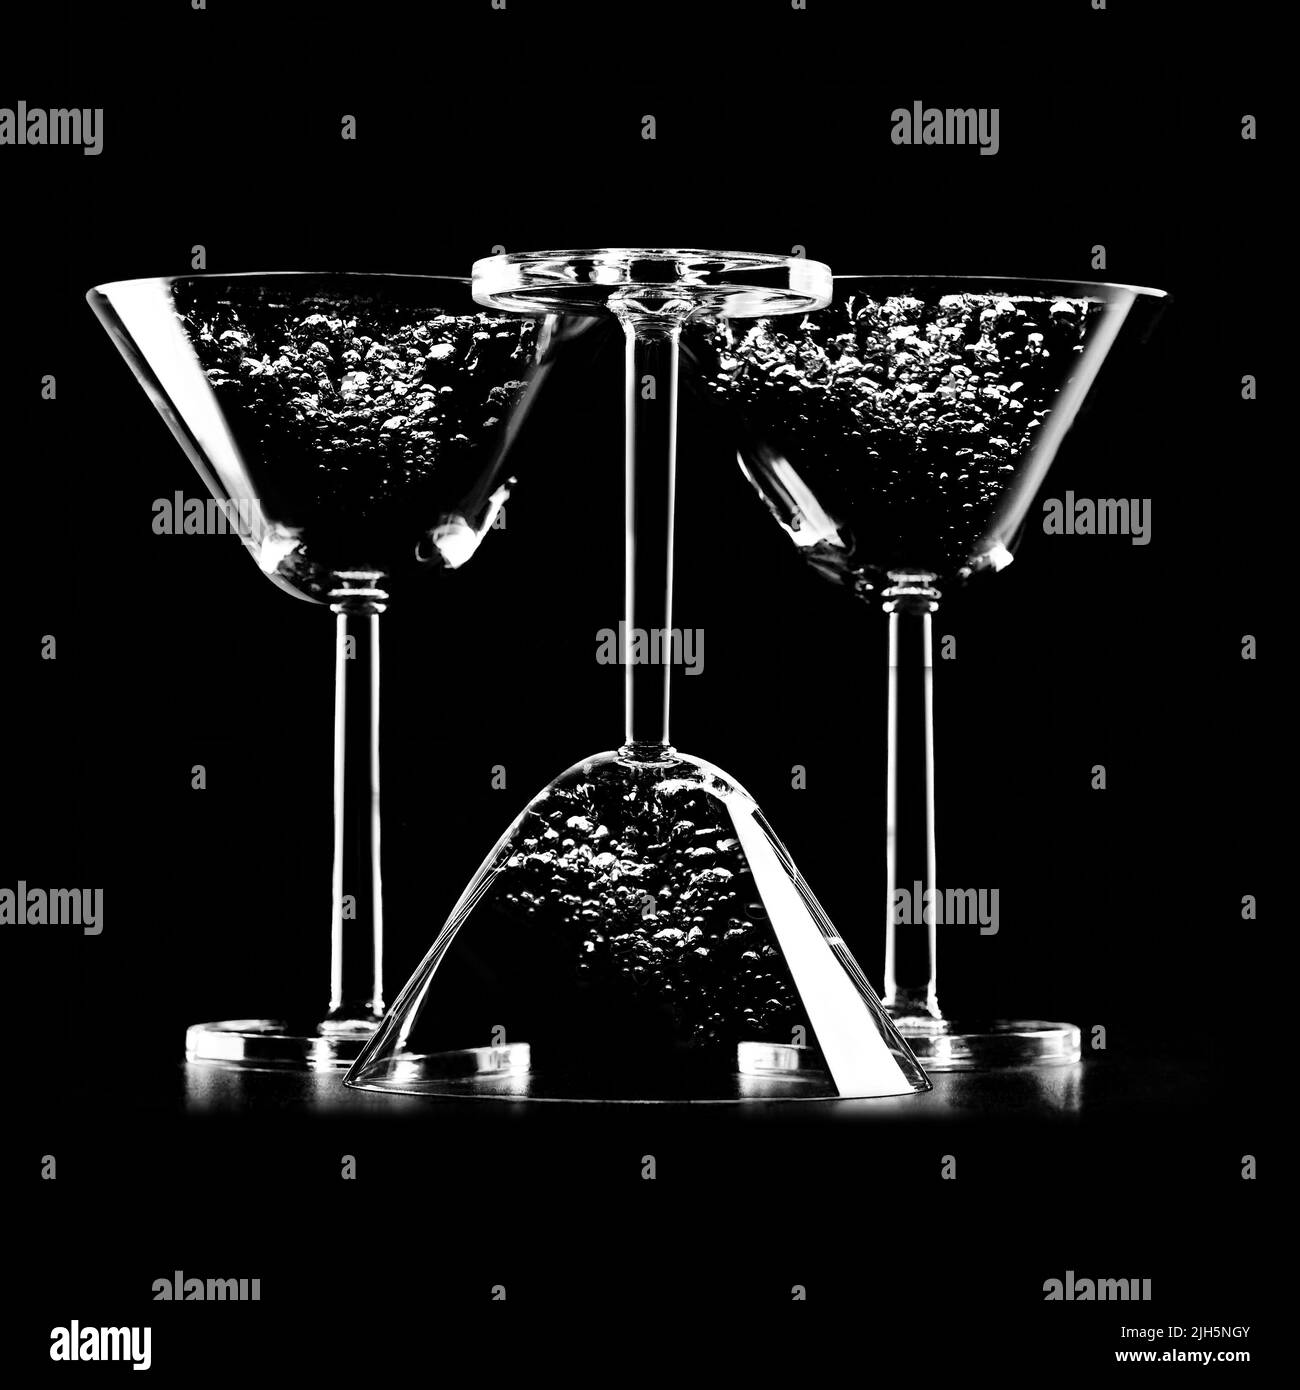 Silhouette de verres à cocktail isolés sur fond noir avec du liquide et des bulles. Image abstraite en noir et blanc avec cocktails Banque D'Images